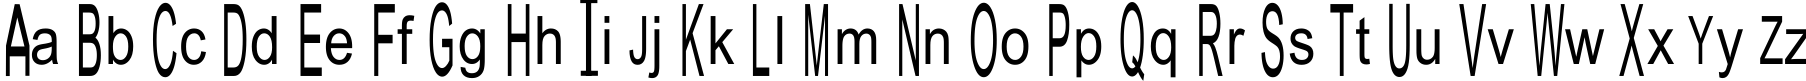 Пример написания английского алфавита шрифтом Julia Special Font H